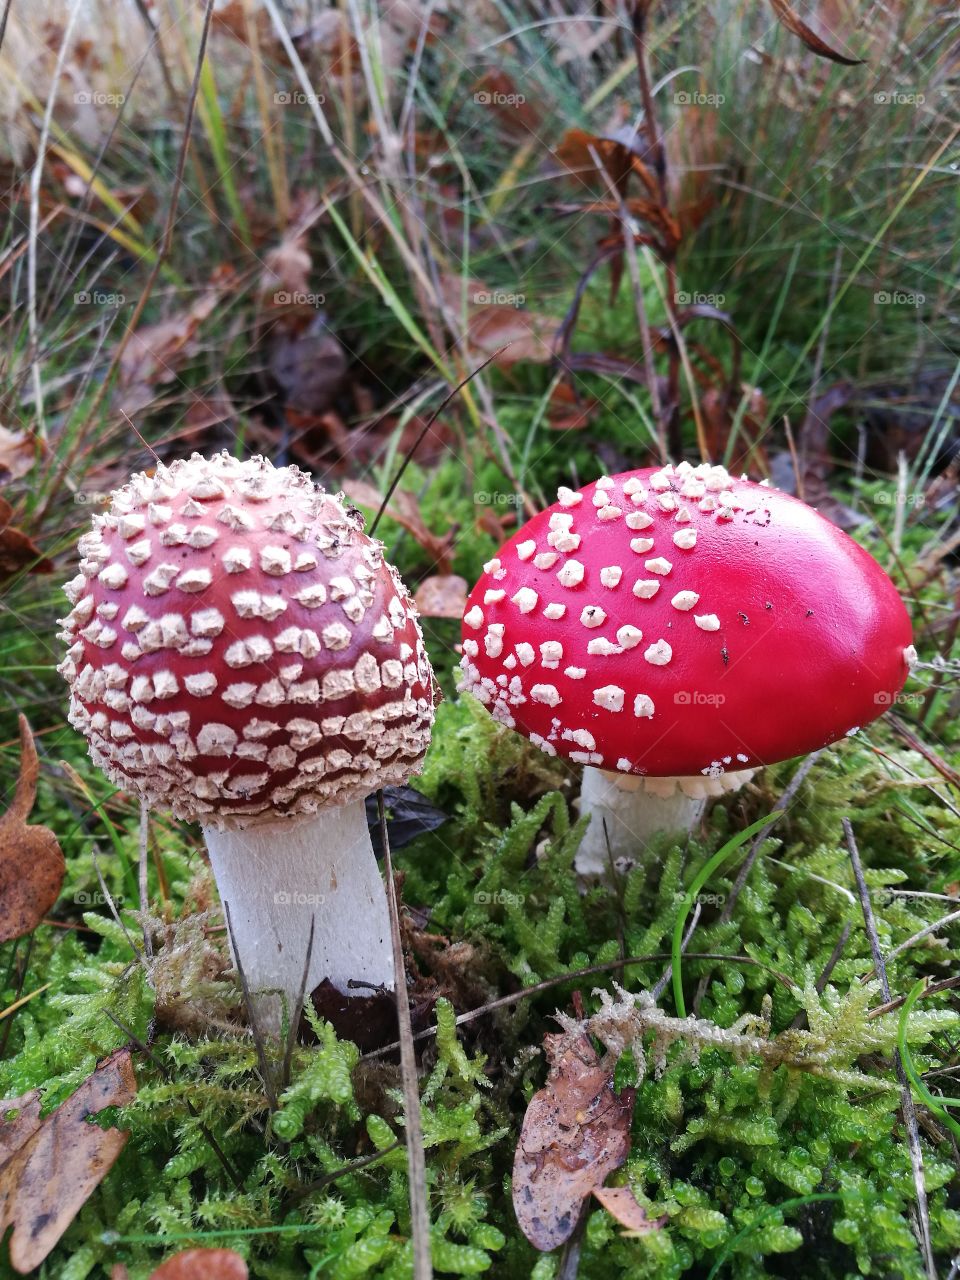 Muscaria mushroom